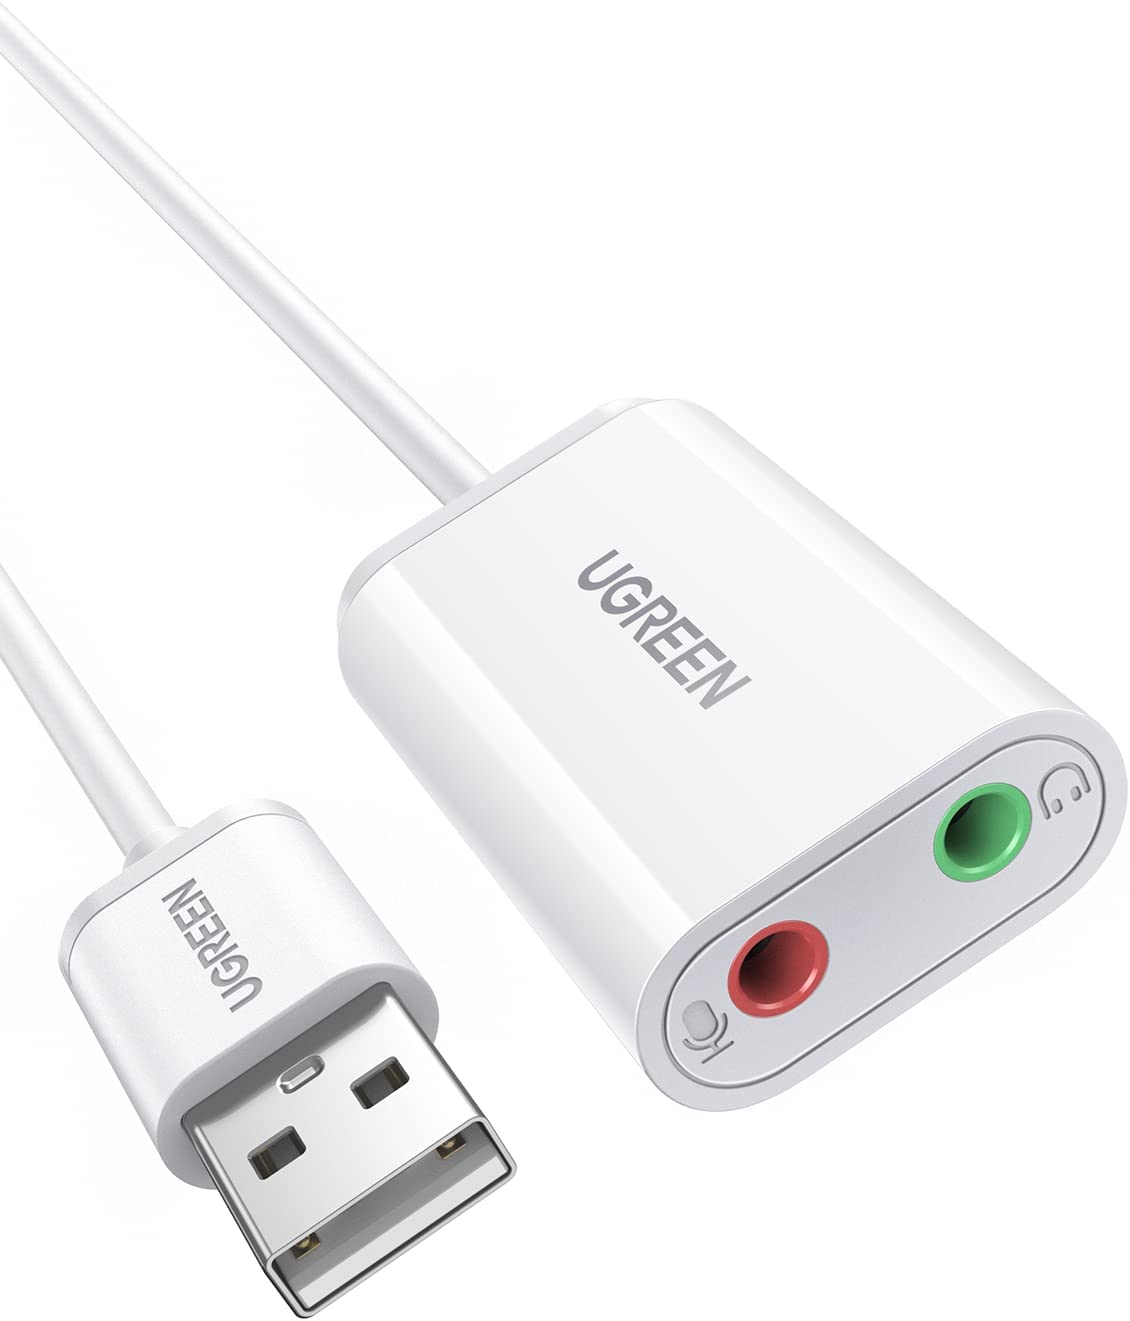 30143 Звуковая карта внешняя UGREEN US205, USB to 2 AUX 3.5mm (микрофонный вход + аудиовыход), с проводом 15cm, цвет: белый